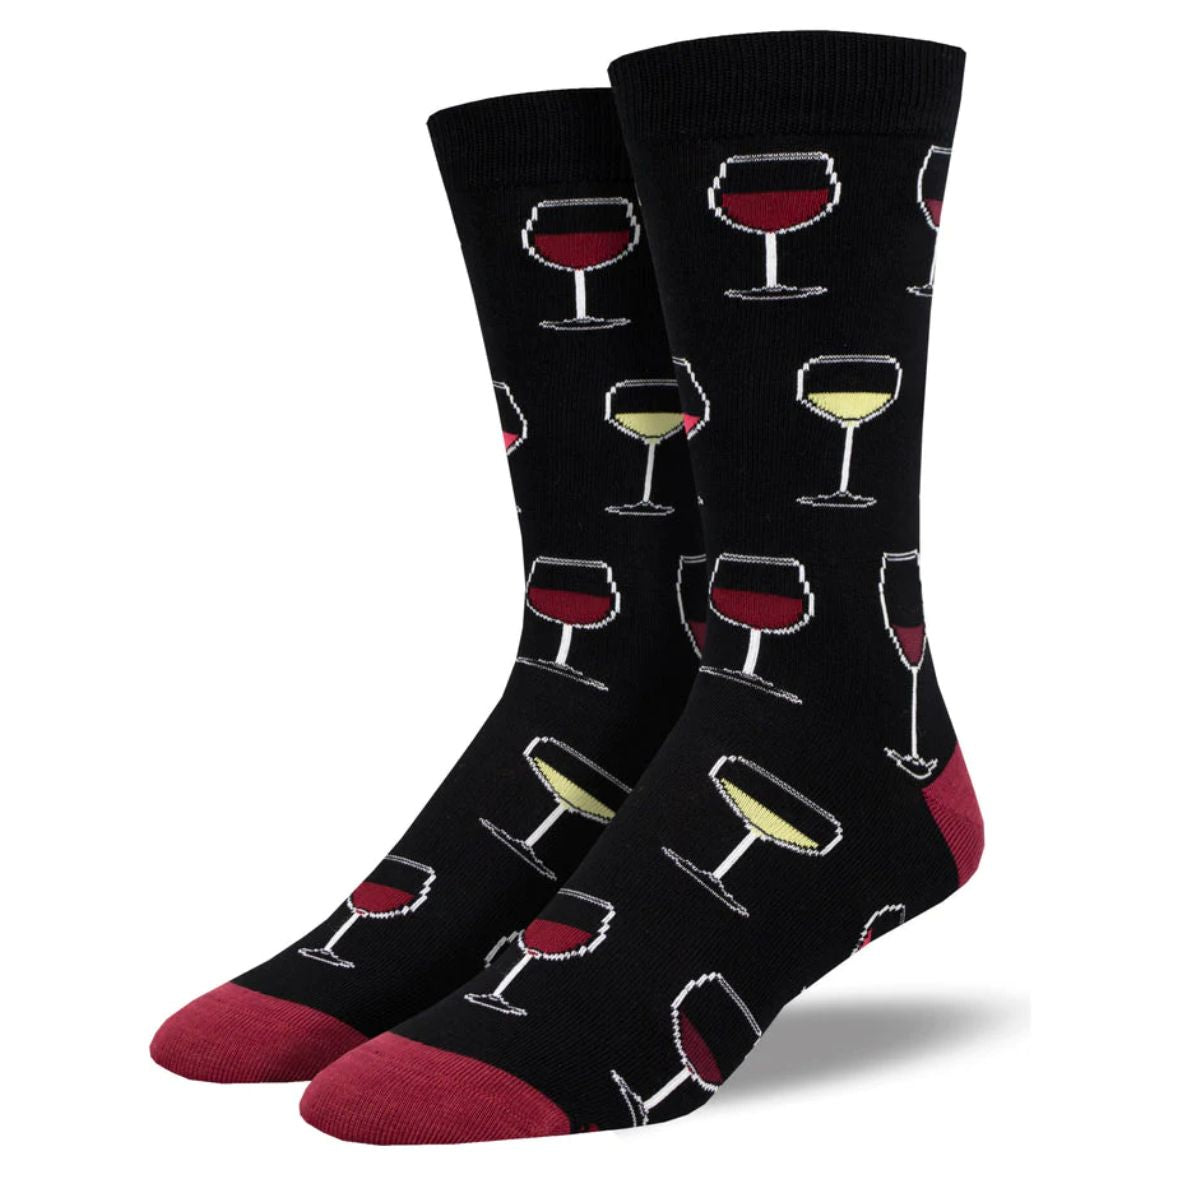 Sip sip hooray socks a pair of black crew socks with wine glass print